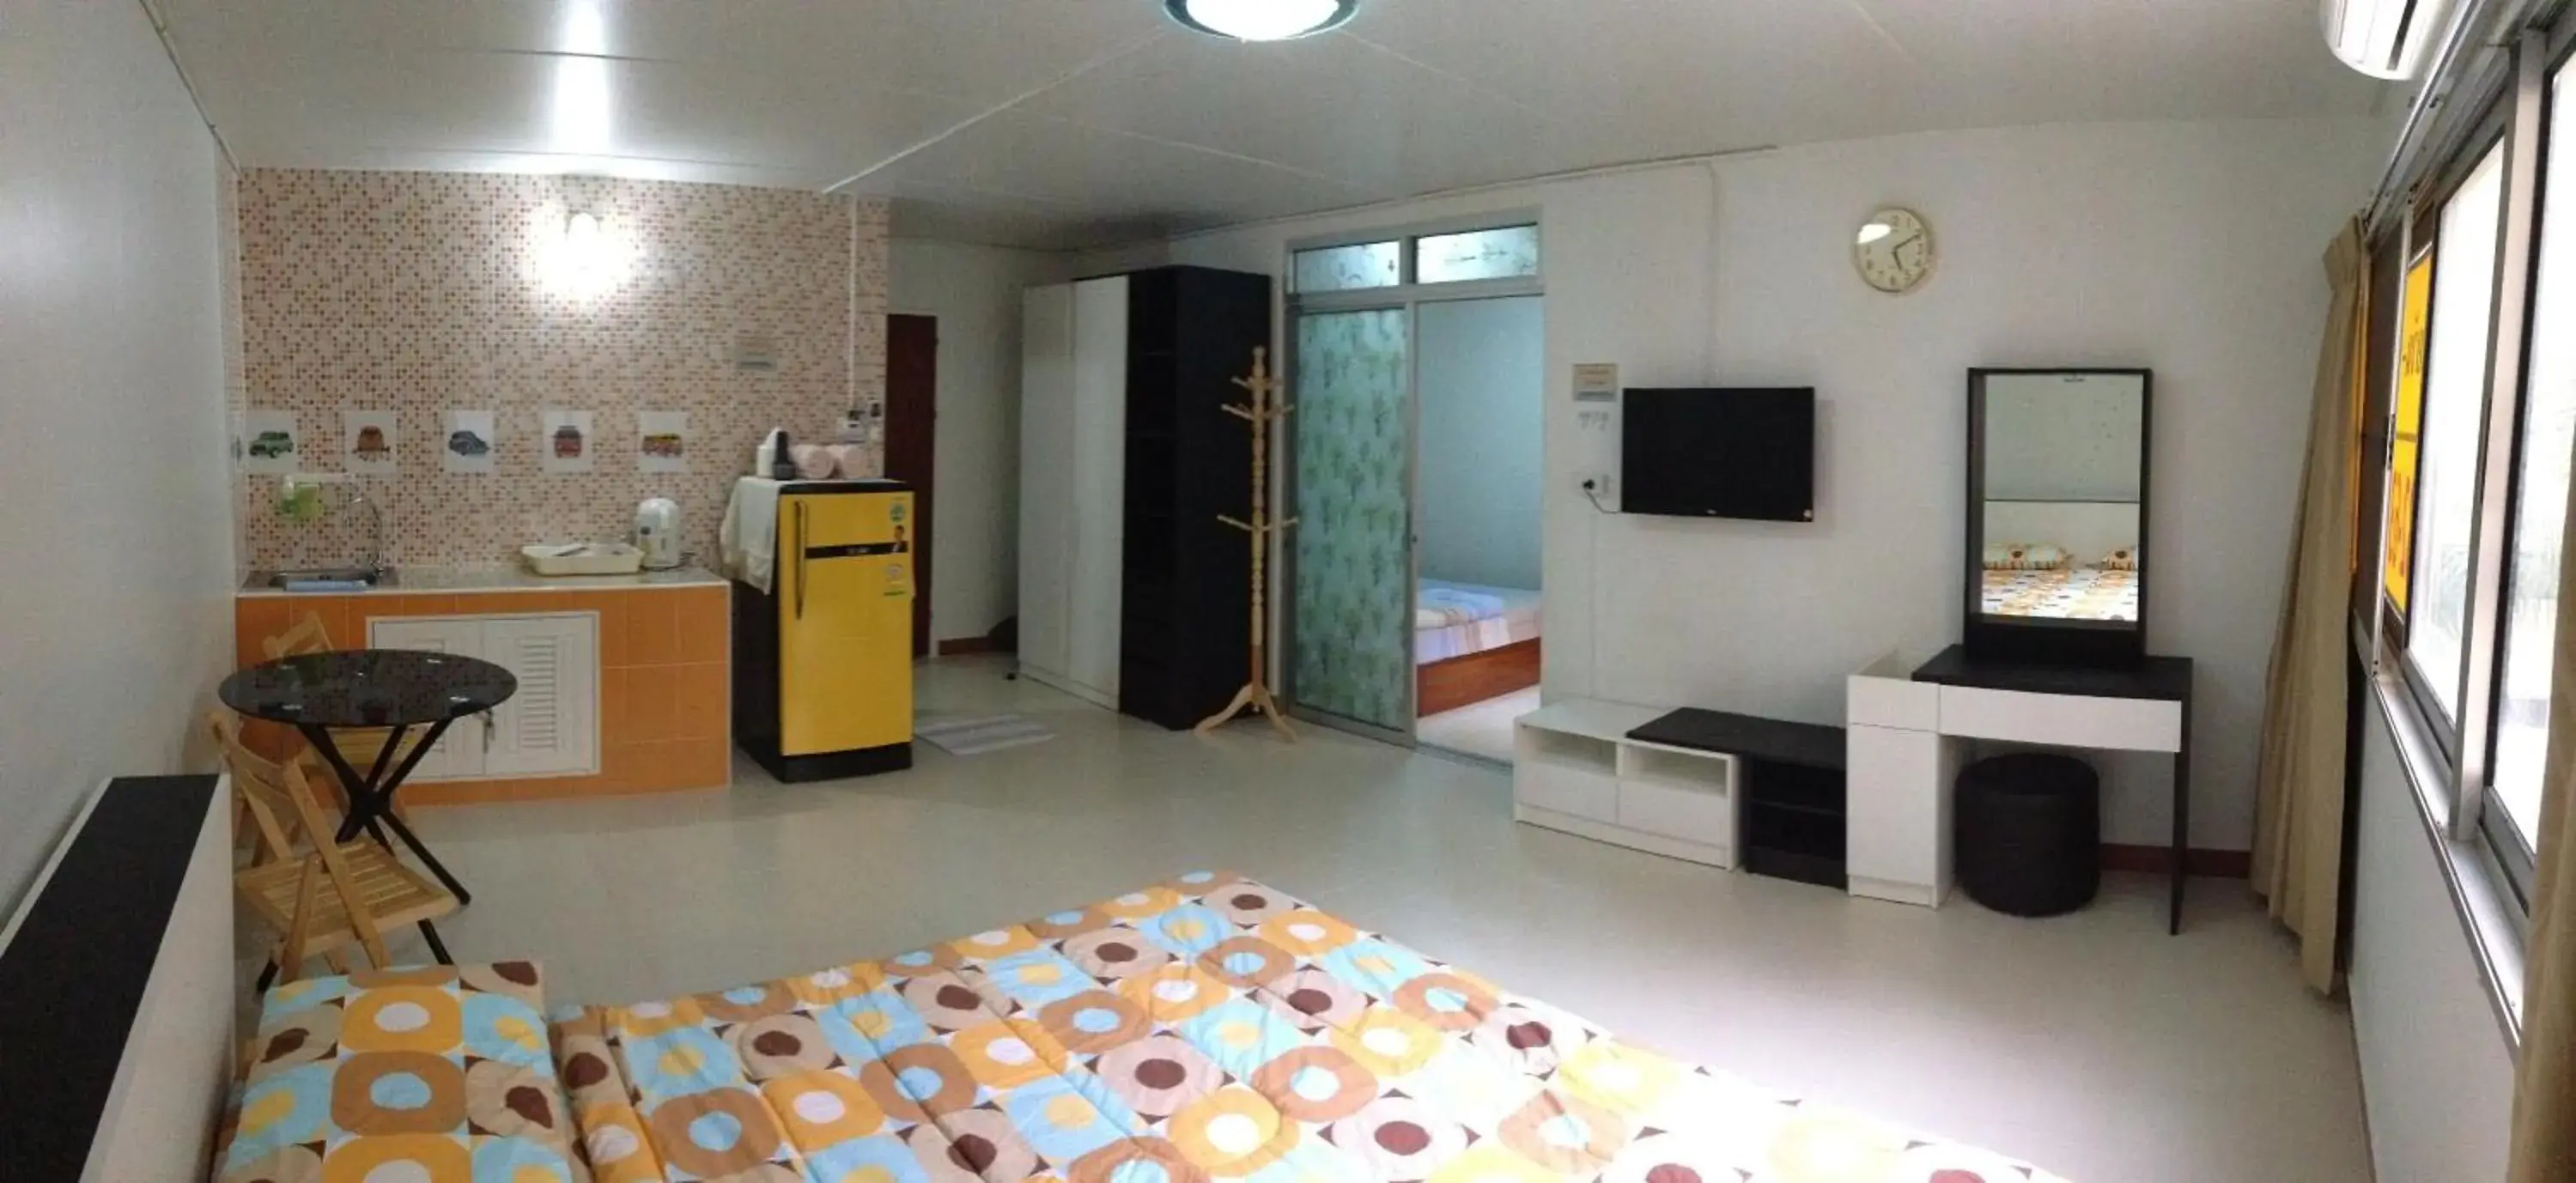 Two-Bedroom Apartment in Muangthongthani Rental/Khun Dan